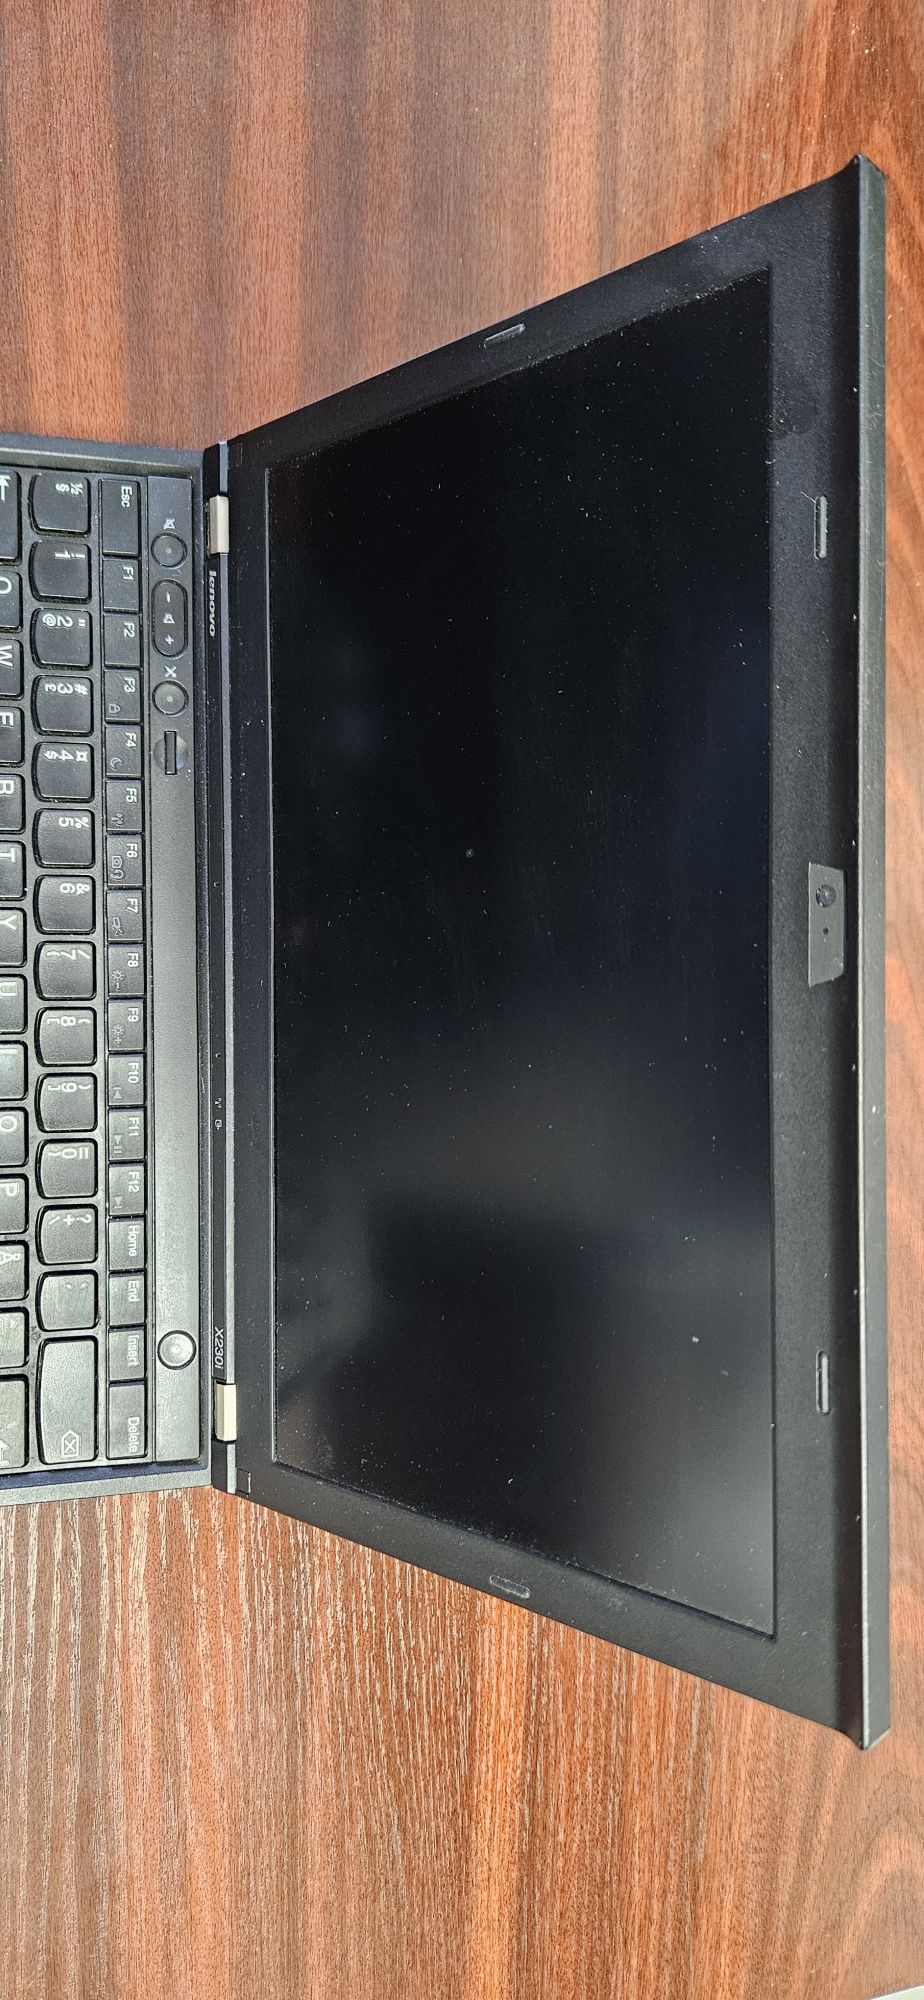 Laptop Lenovo ThinkPad X230i